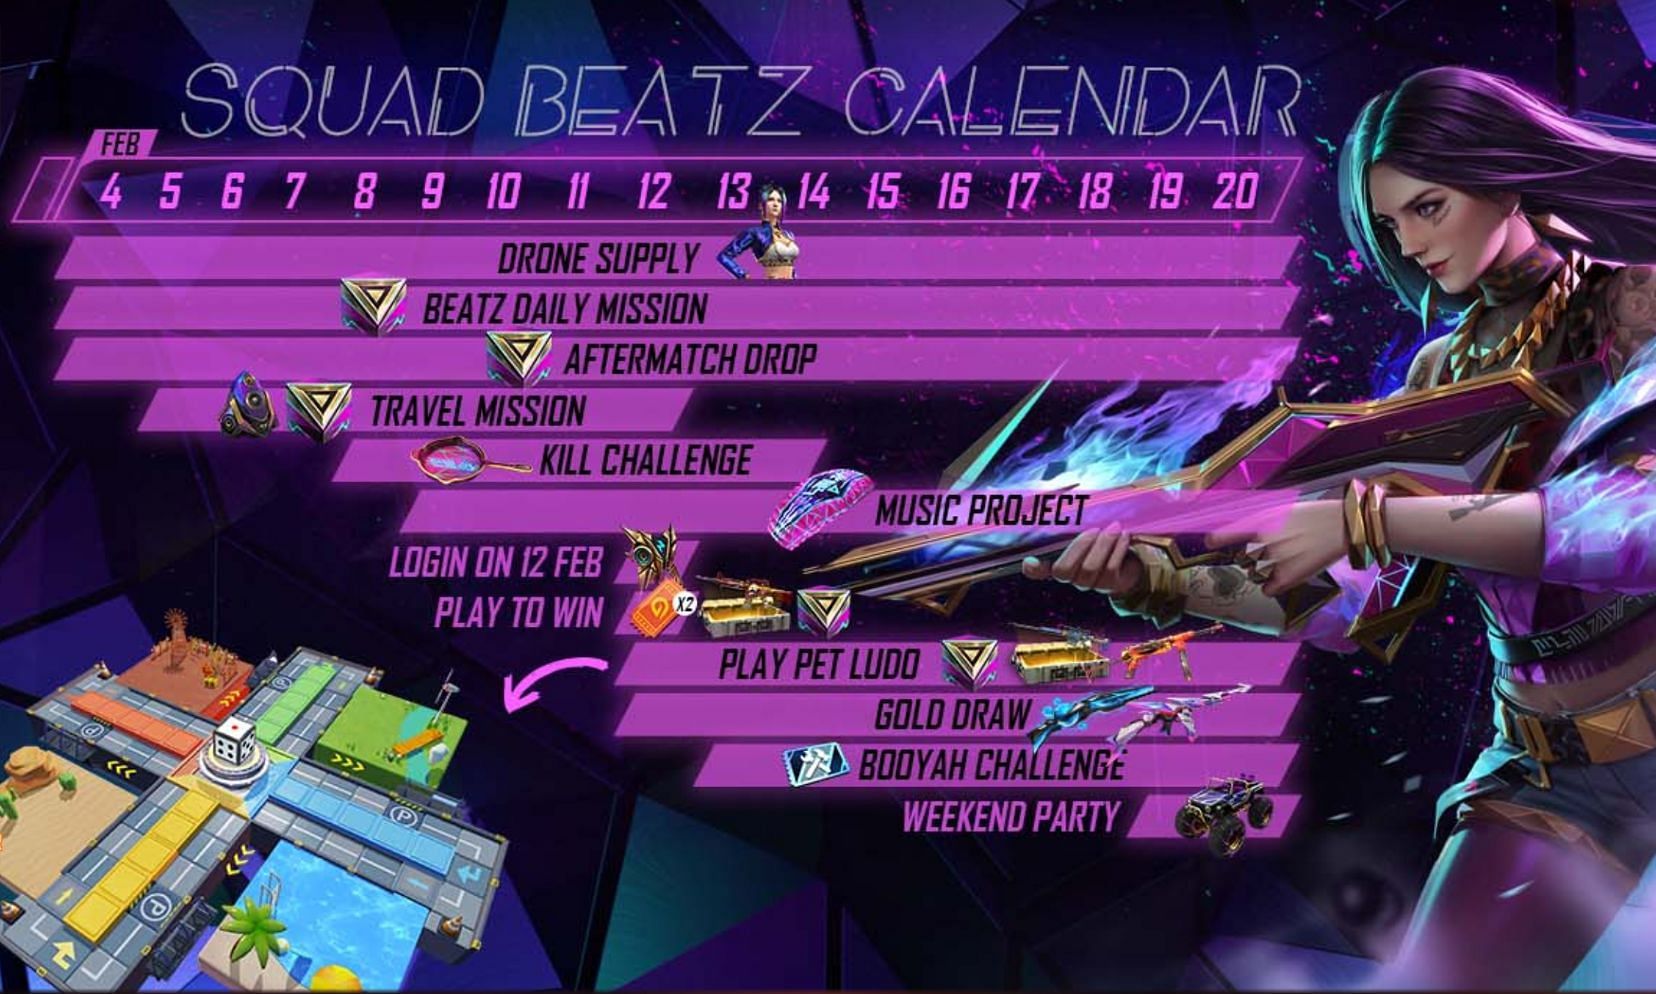 Squad Beatz event calendar (Image via Garena)